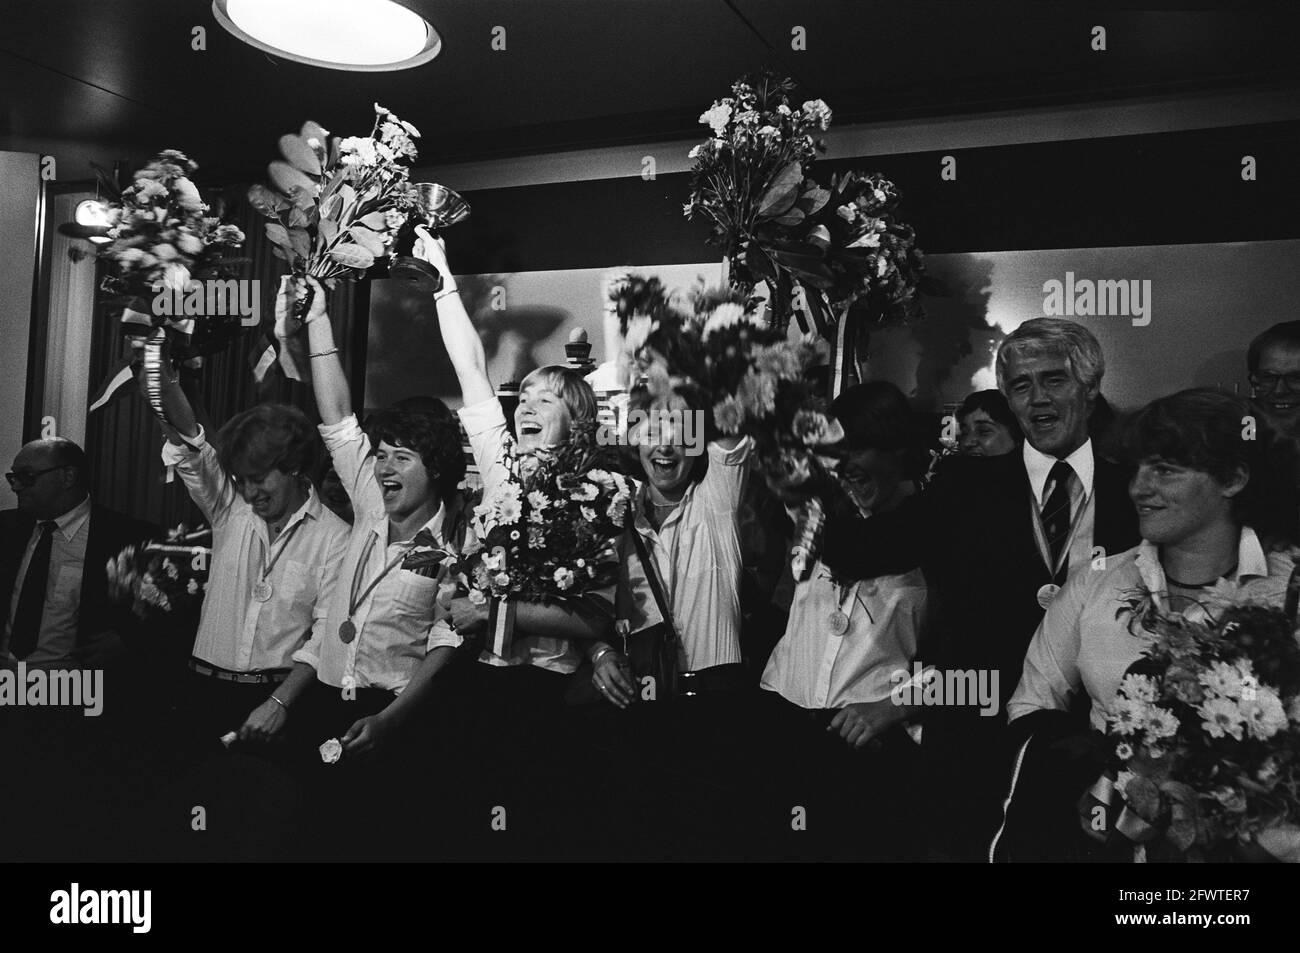 Squadra di hockey femminile con coppa del mondo all'aeroporto di Schiphol, 25 settembre 1978, CUPS, hockey su campo, I Paesi Bassi, foto agenzia stampa del XX secolo, notizie da ricordare, documentario, fotografia storica 1945-1990, storie visive, Storia umana del XX secolo, che cattura momenti nel tempo Foto Stock